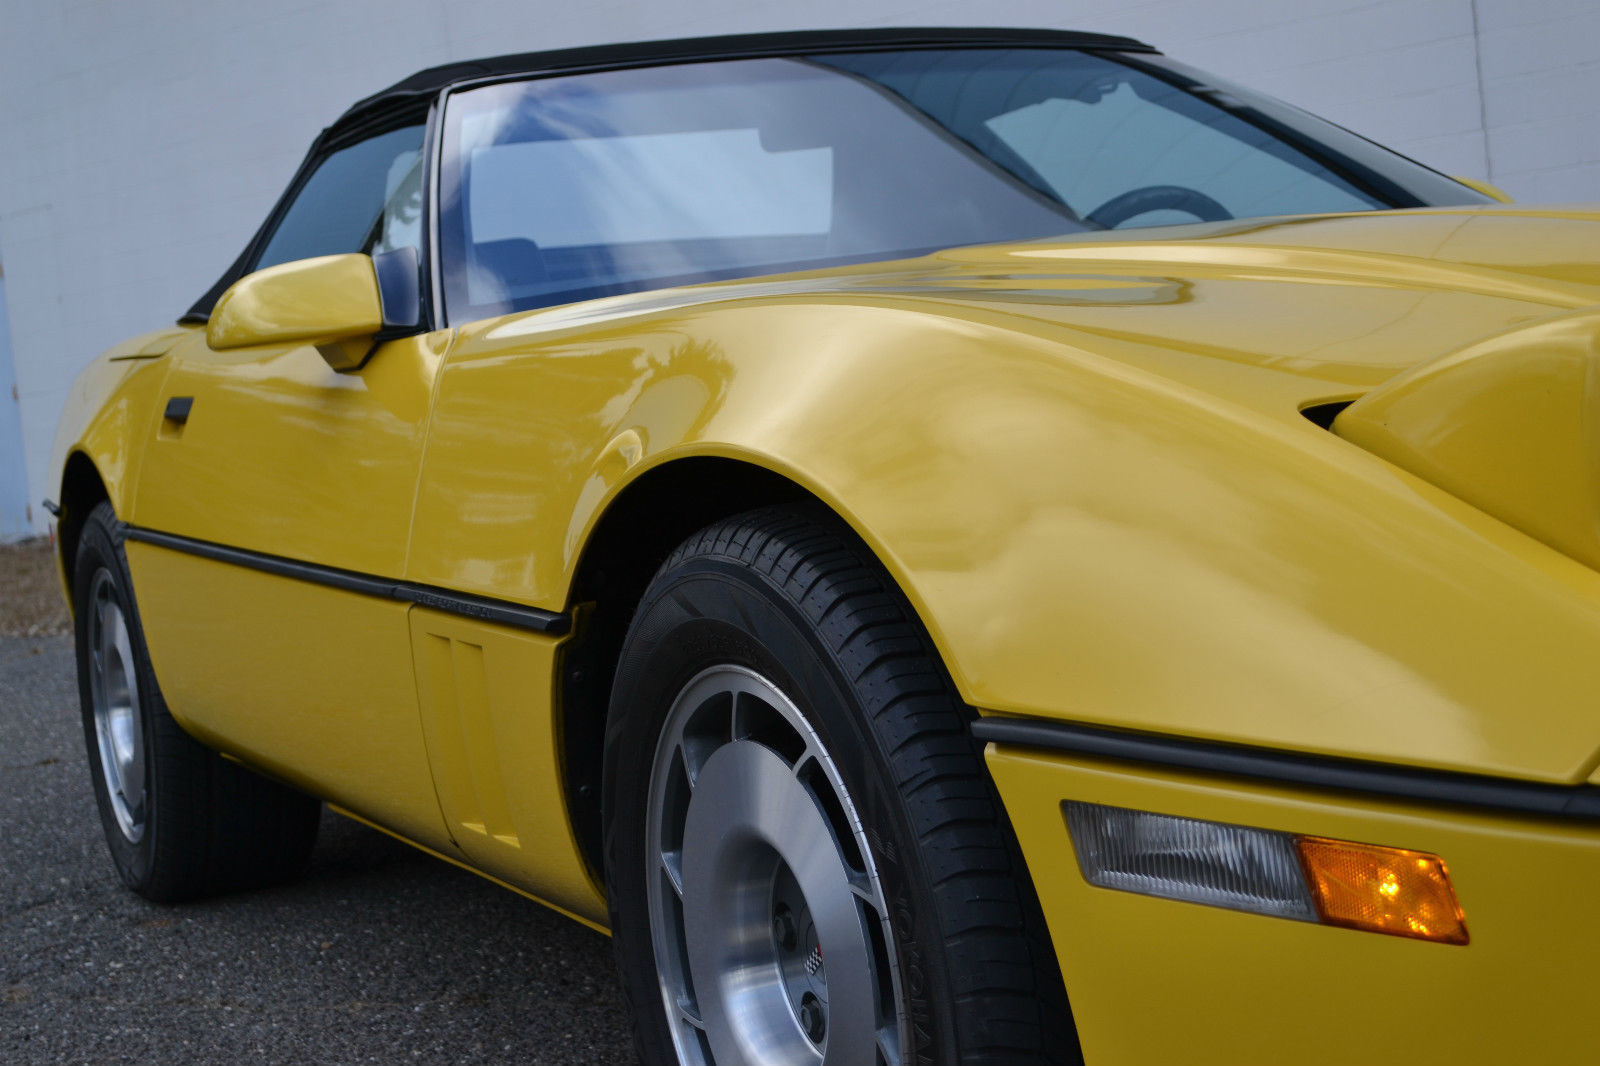 1986 Chevrolet*Corvette*Convertible*Pace Car*35,000 Miles